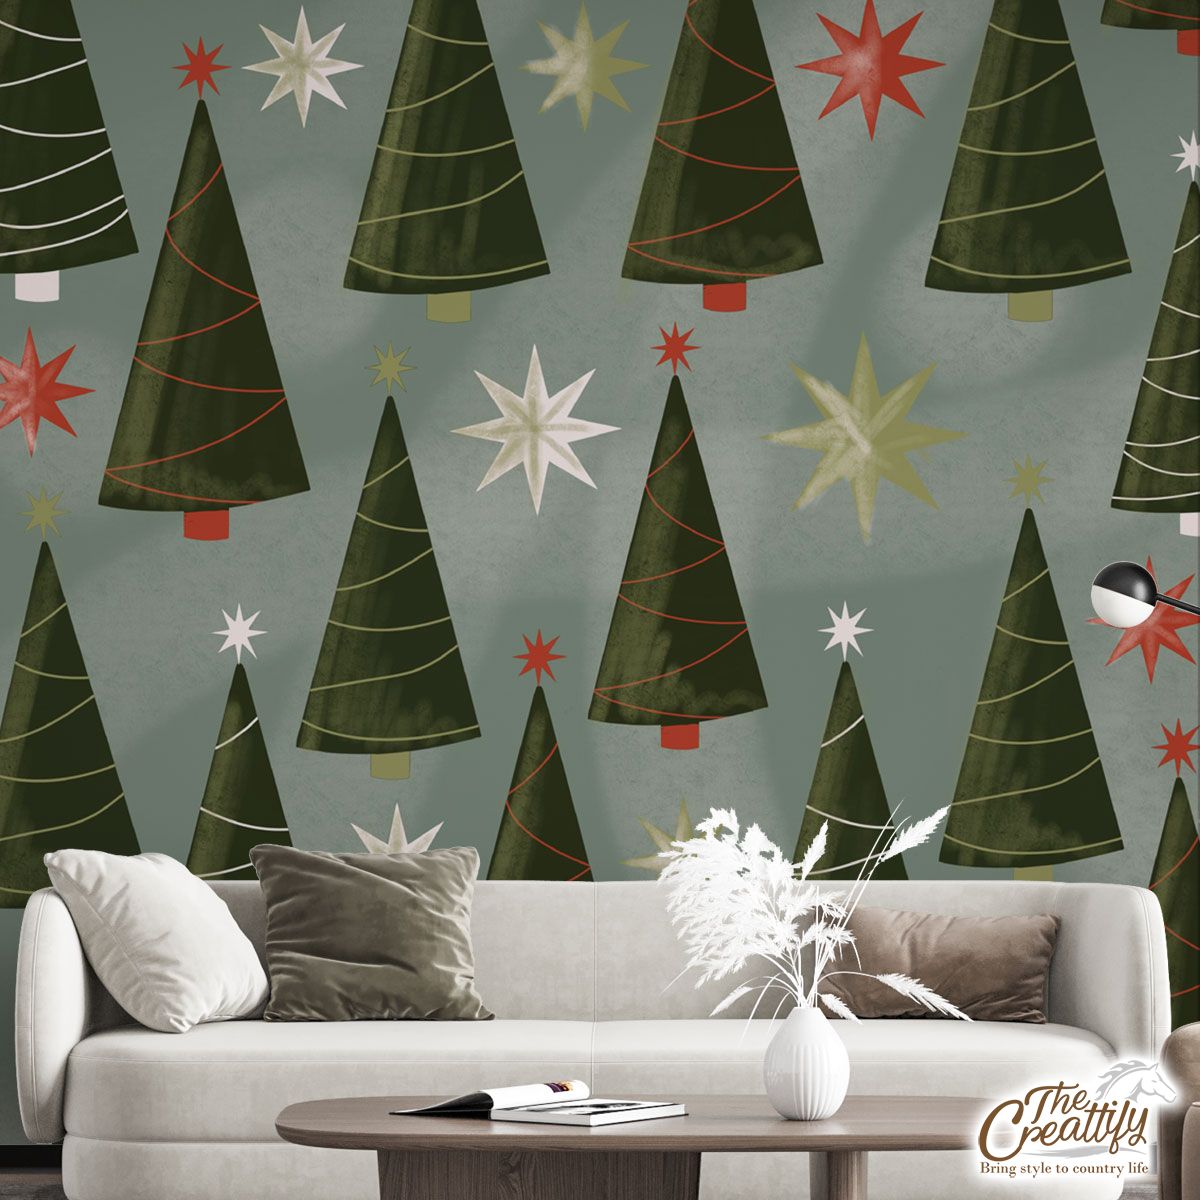 Christmas Tree, Pine Tree And Christmas Tree Star Wall Mural